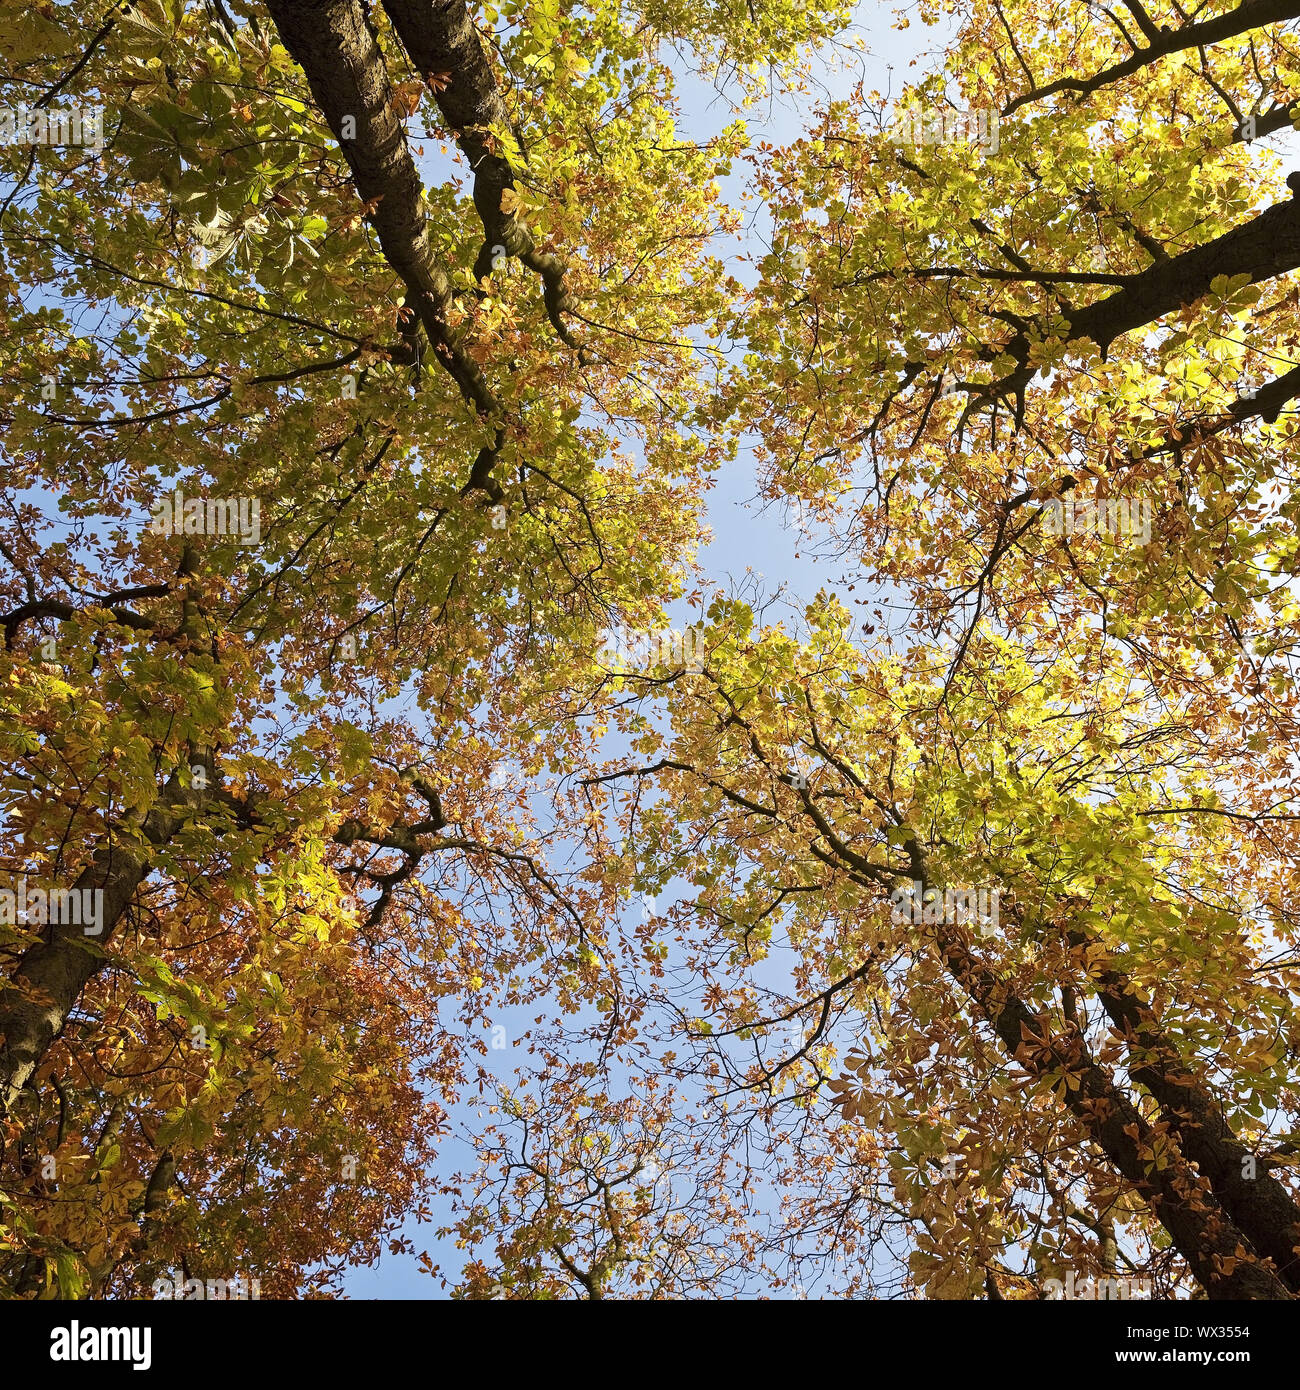 Ver a los árboles en el follaje de otoño, Witten, área de Ruhr, Renania del Norte-Westfalia, Alemania, Europa Foto de stock